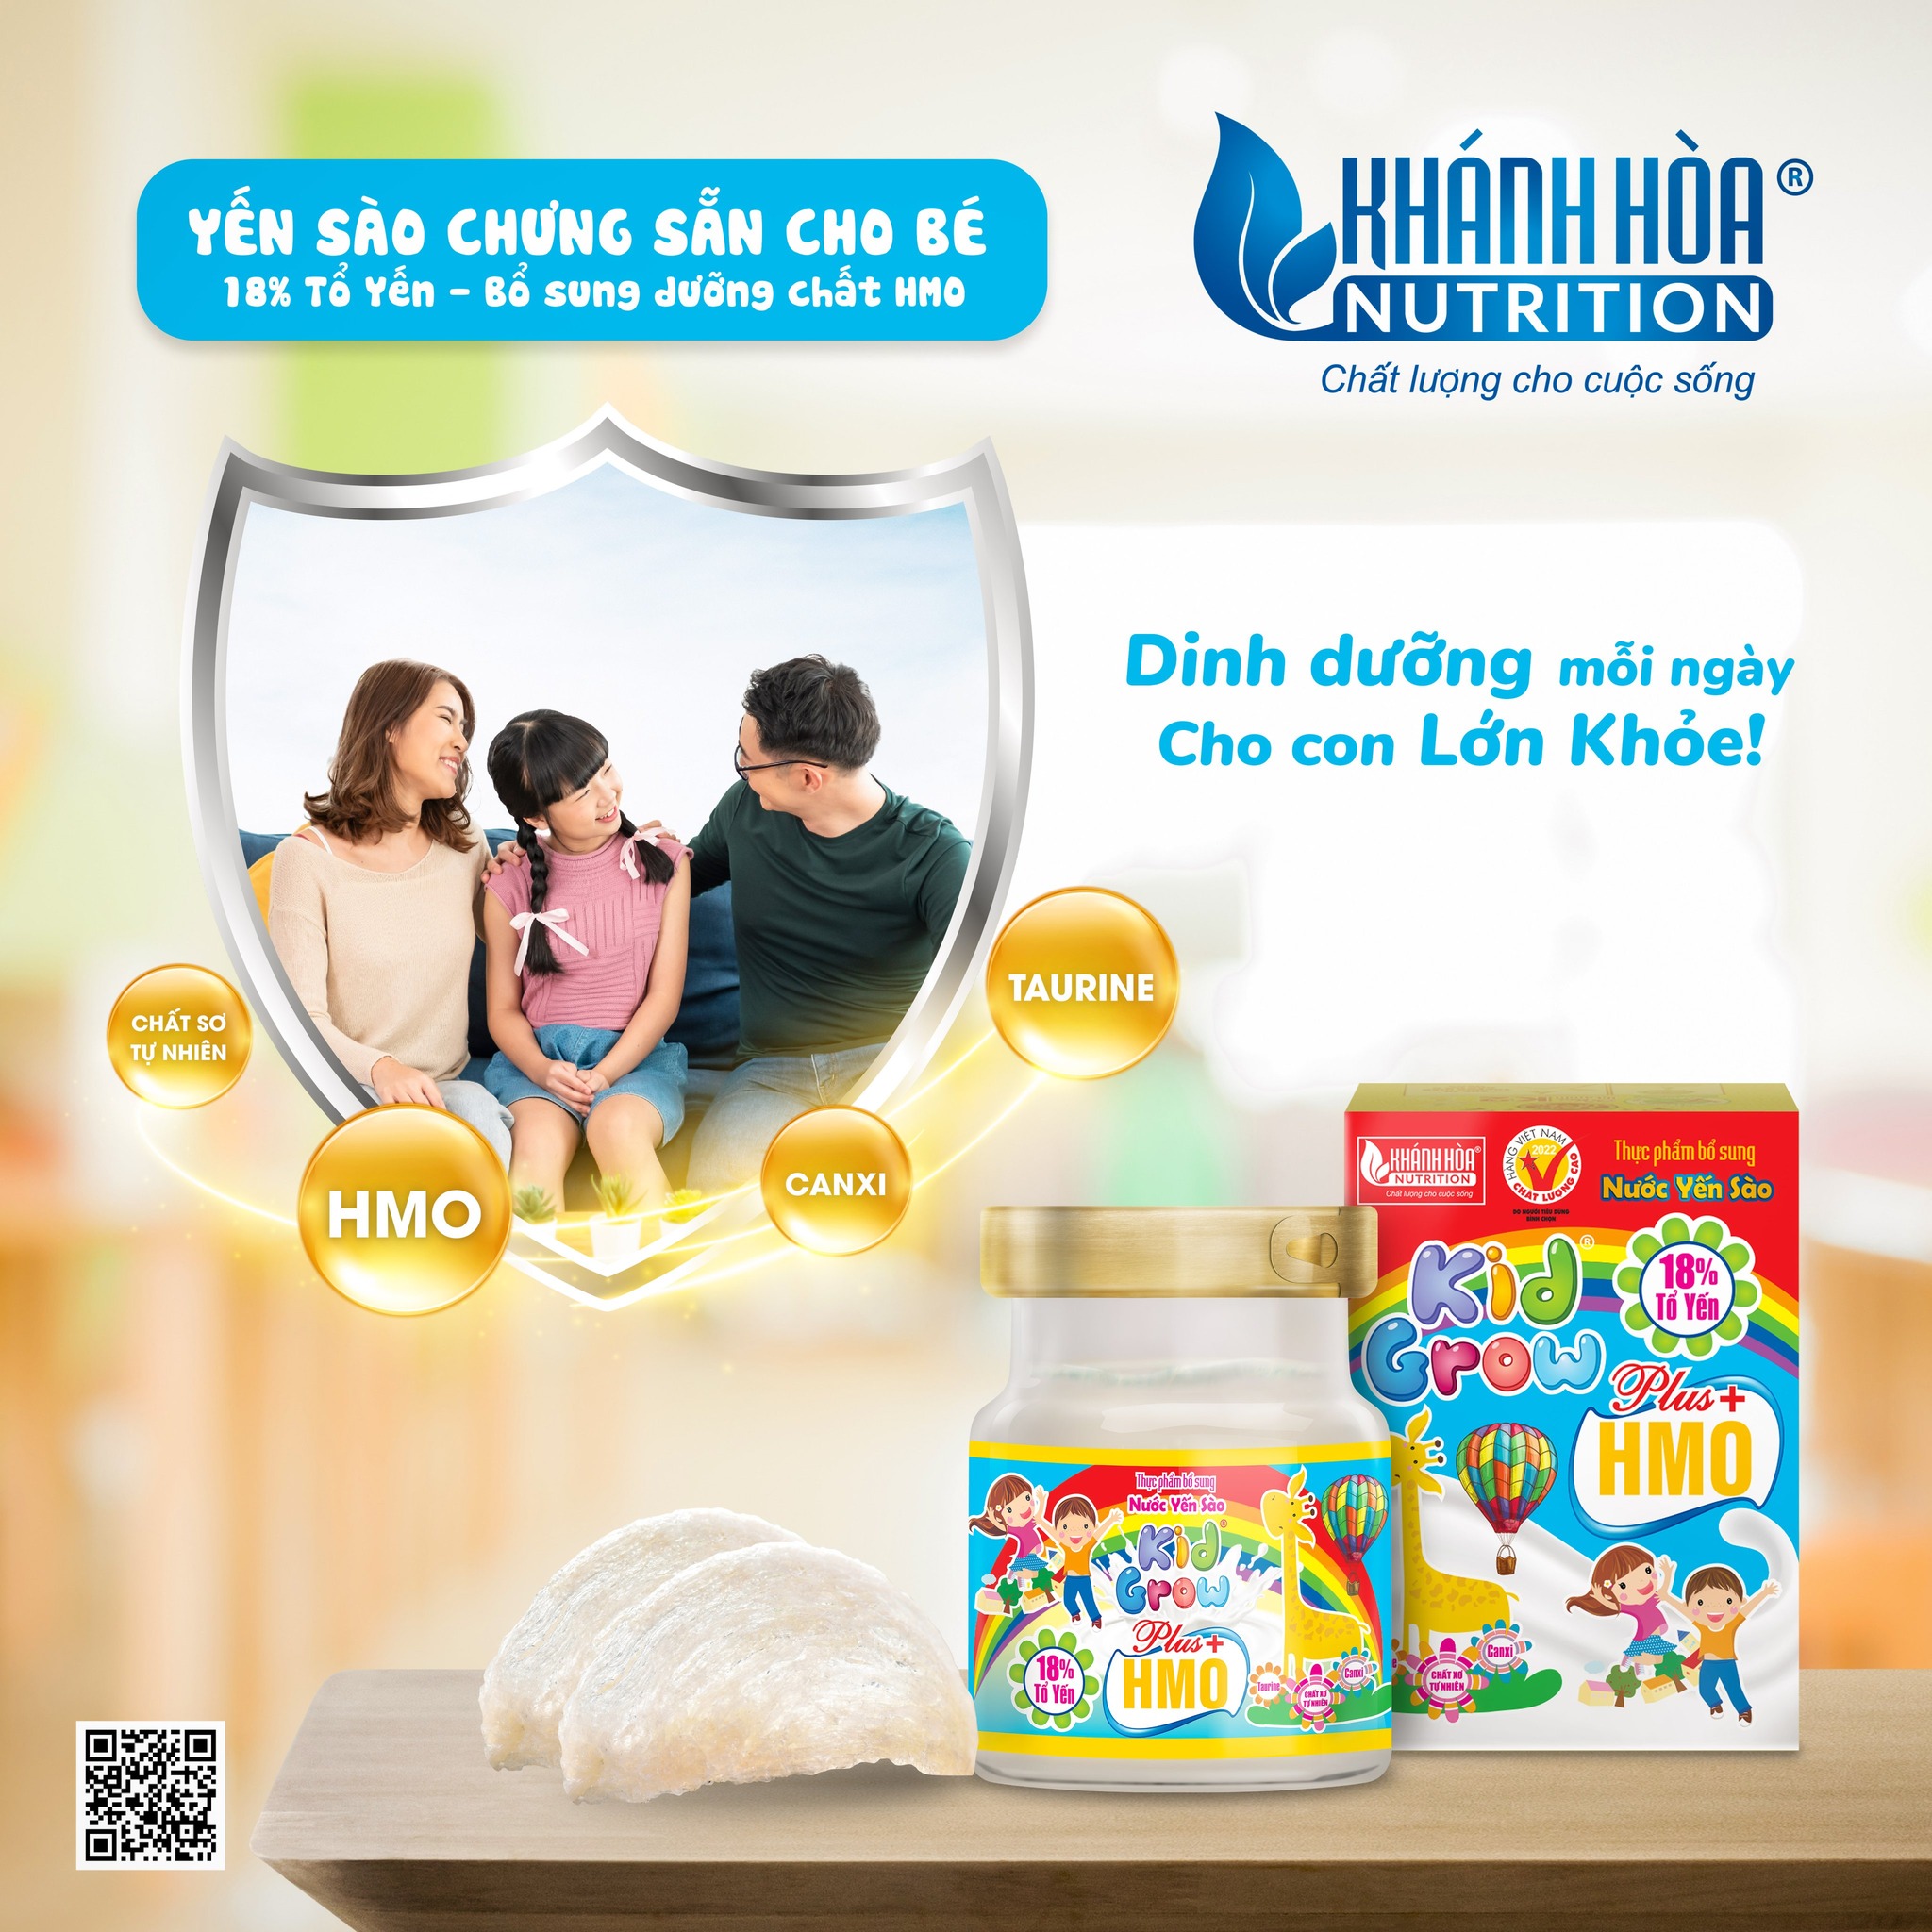 Nước Yến Sào KidGrow Bổ Sung HMO 18% -Khánh Hòa Nutrition - 6 Lọ x 70 ML